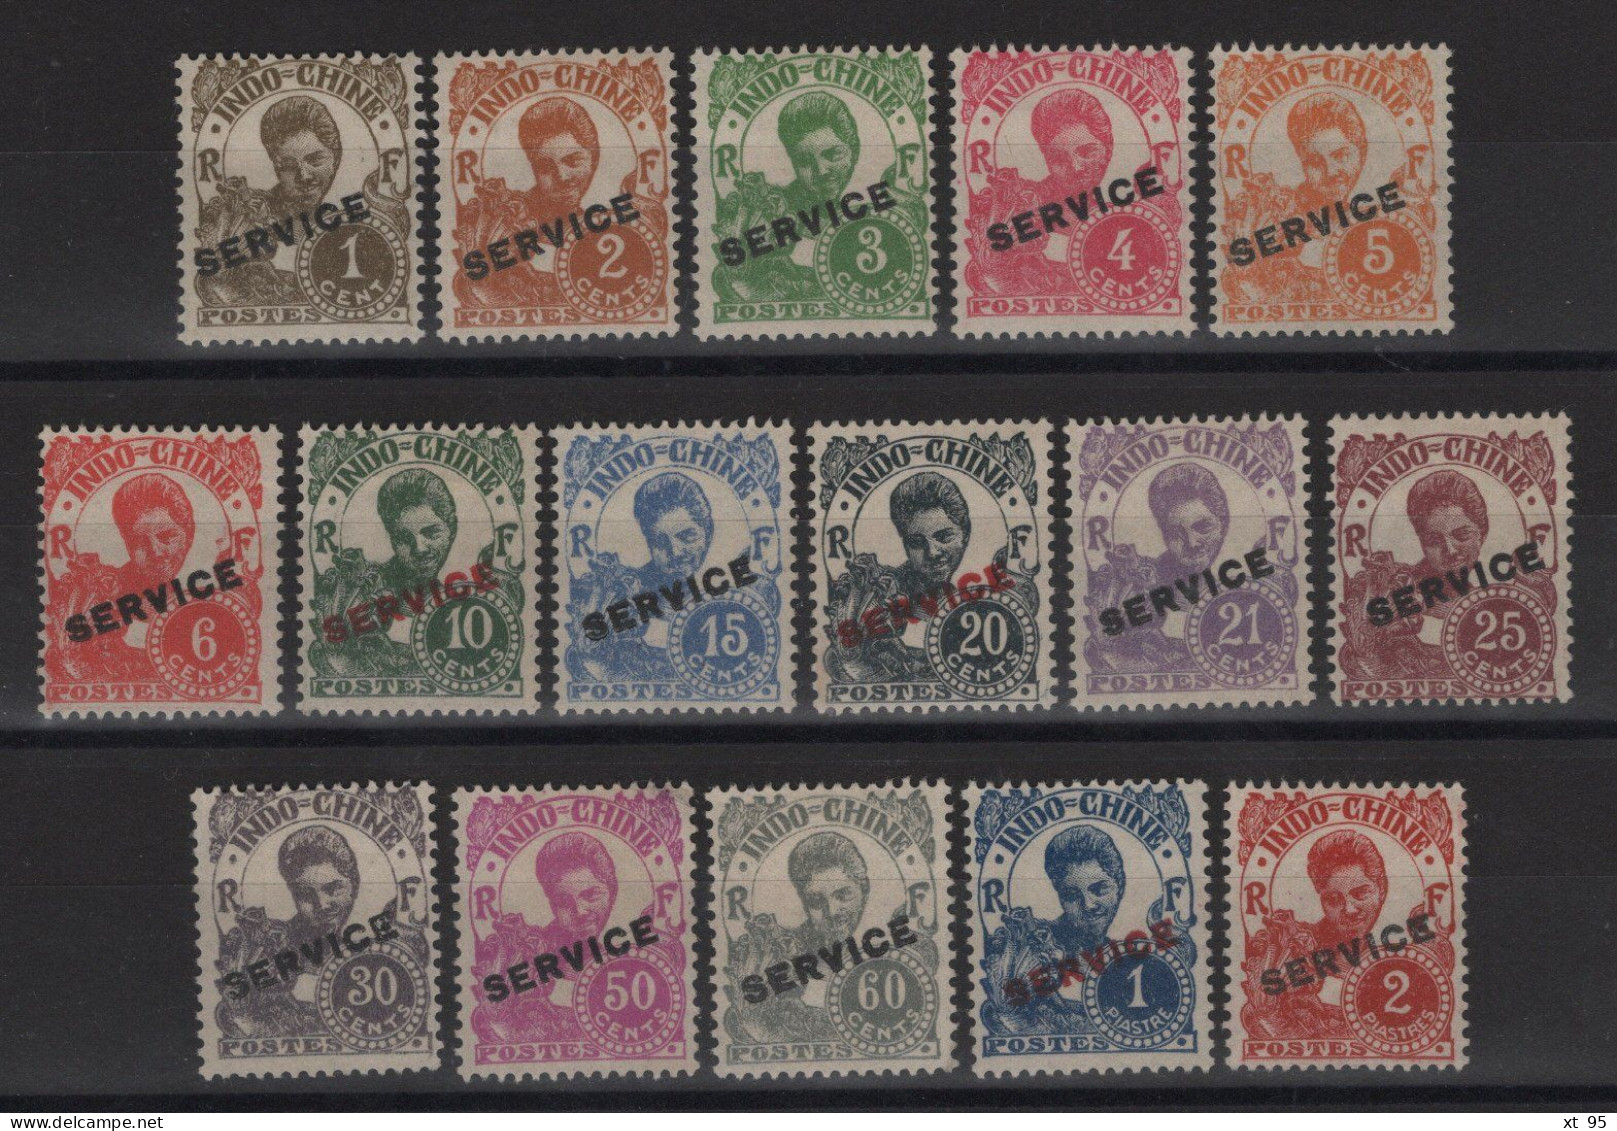 Indochine - Service N°17 à 32 - Cote 150€ - NSG Neufs Sans Gomme (cote Des Obliteres) - Unused Stamps